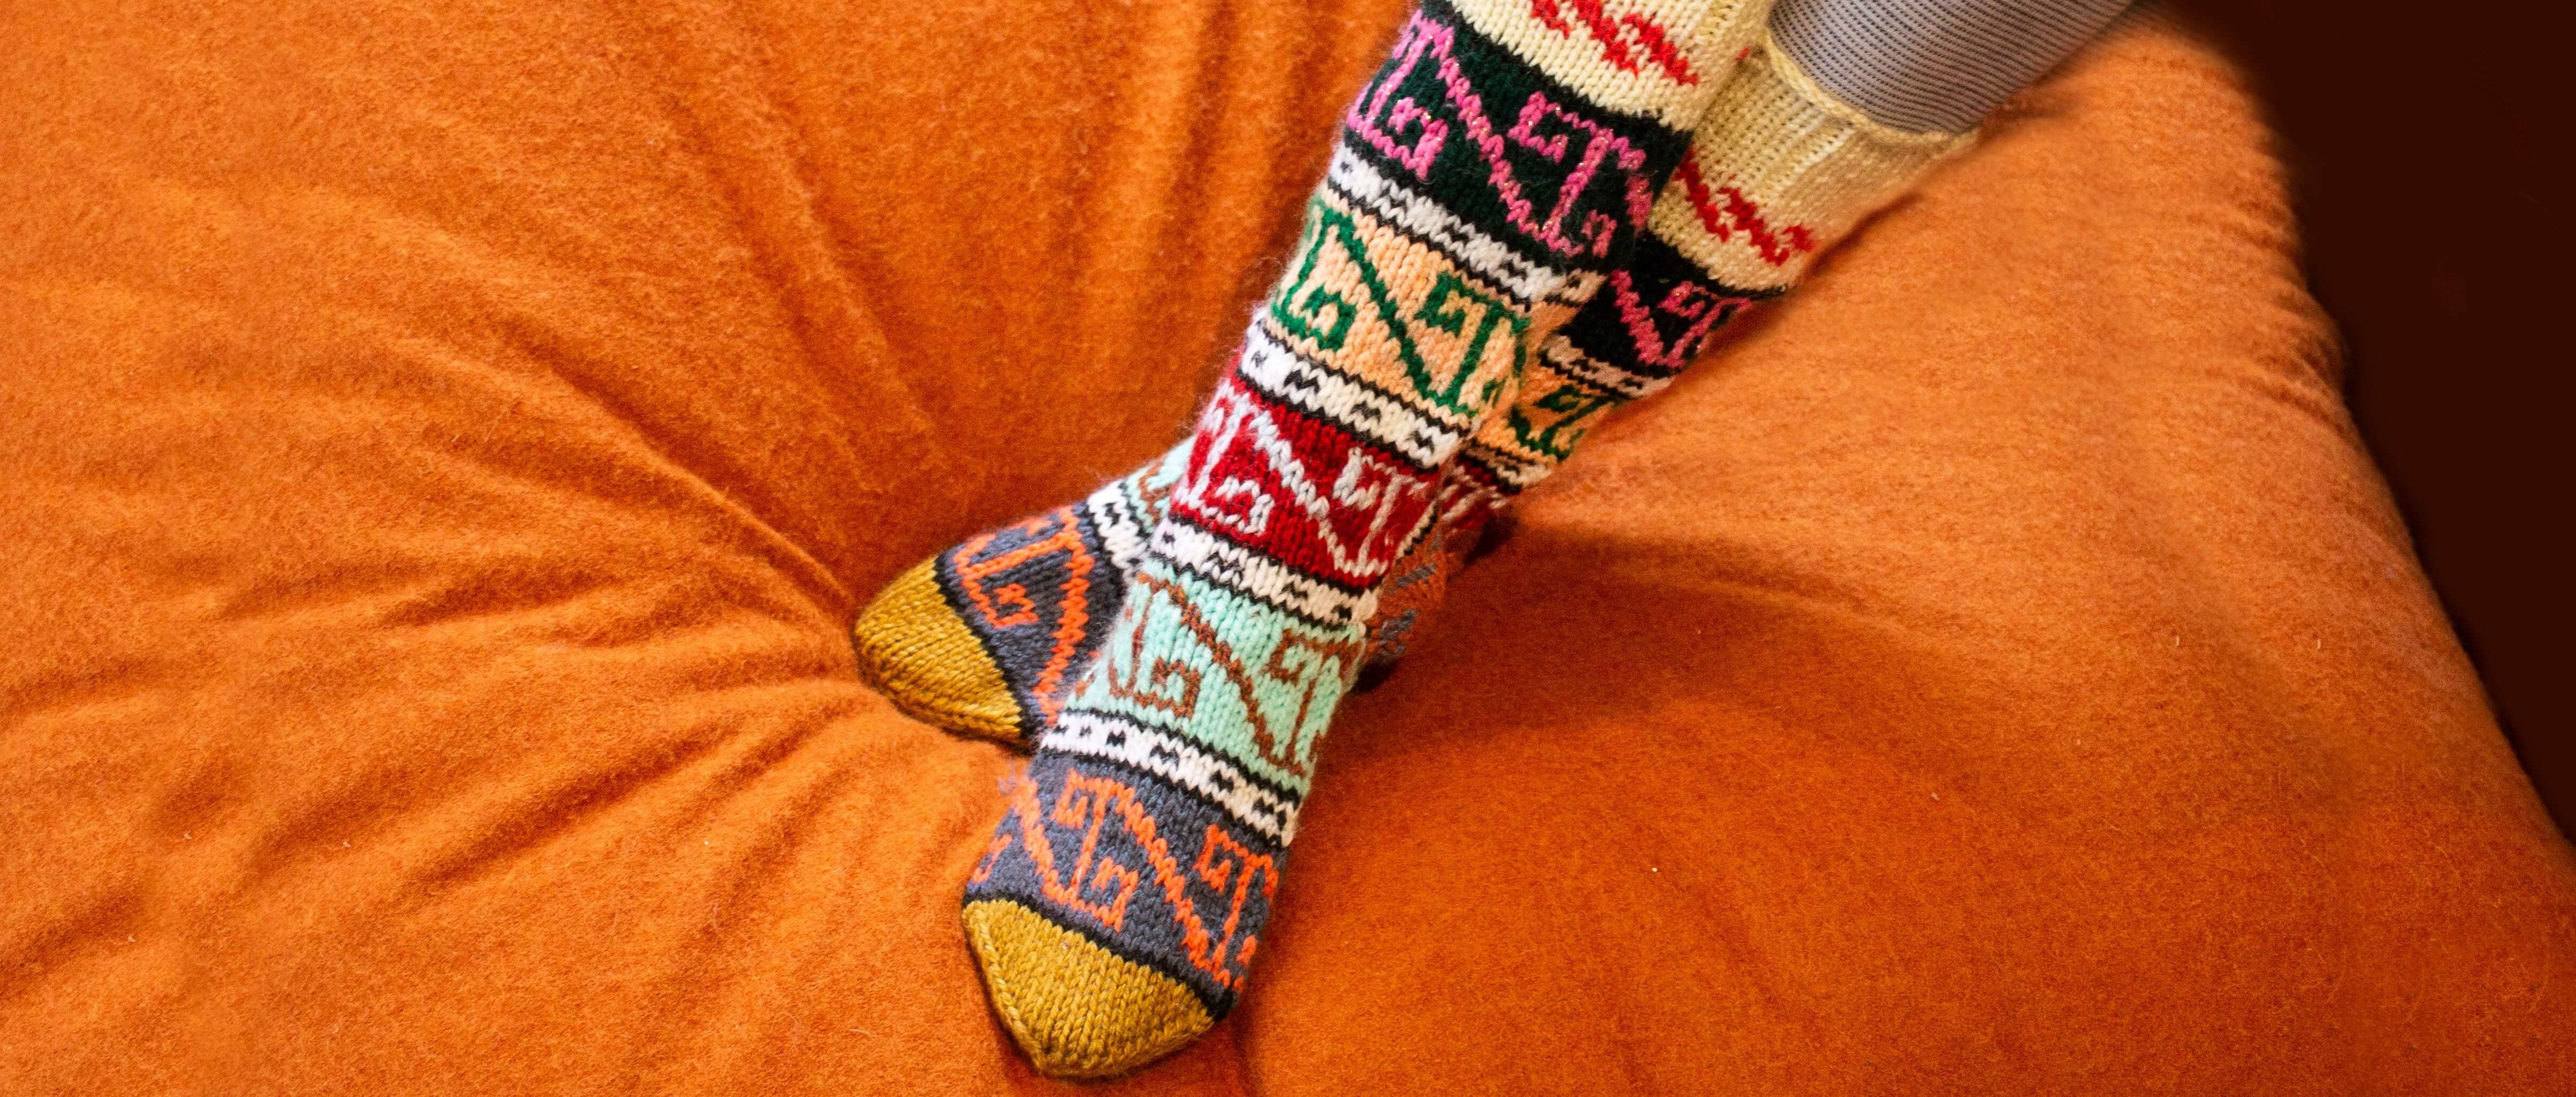 story socks hand-knitted socks knit socks